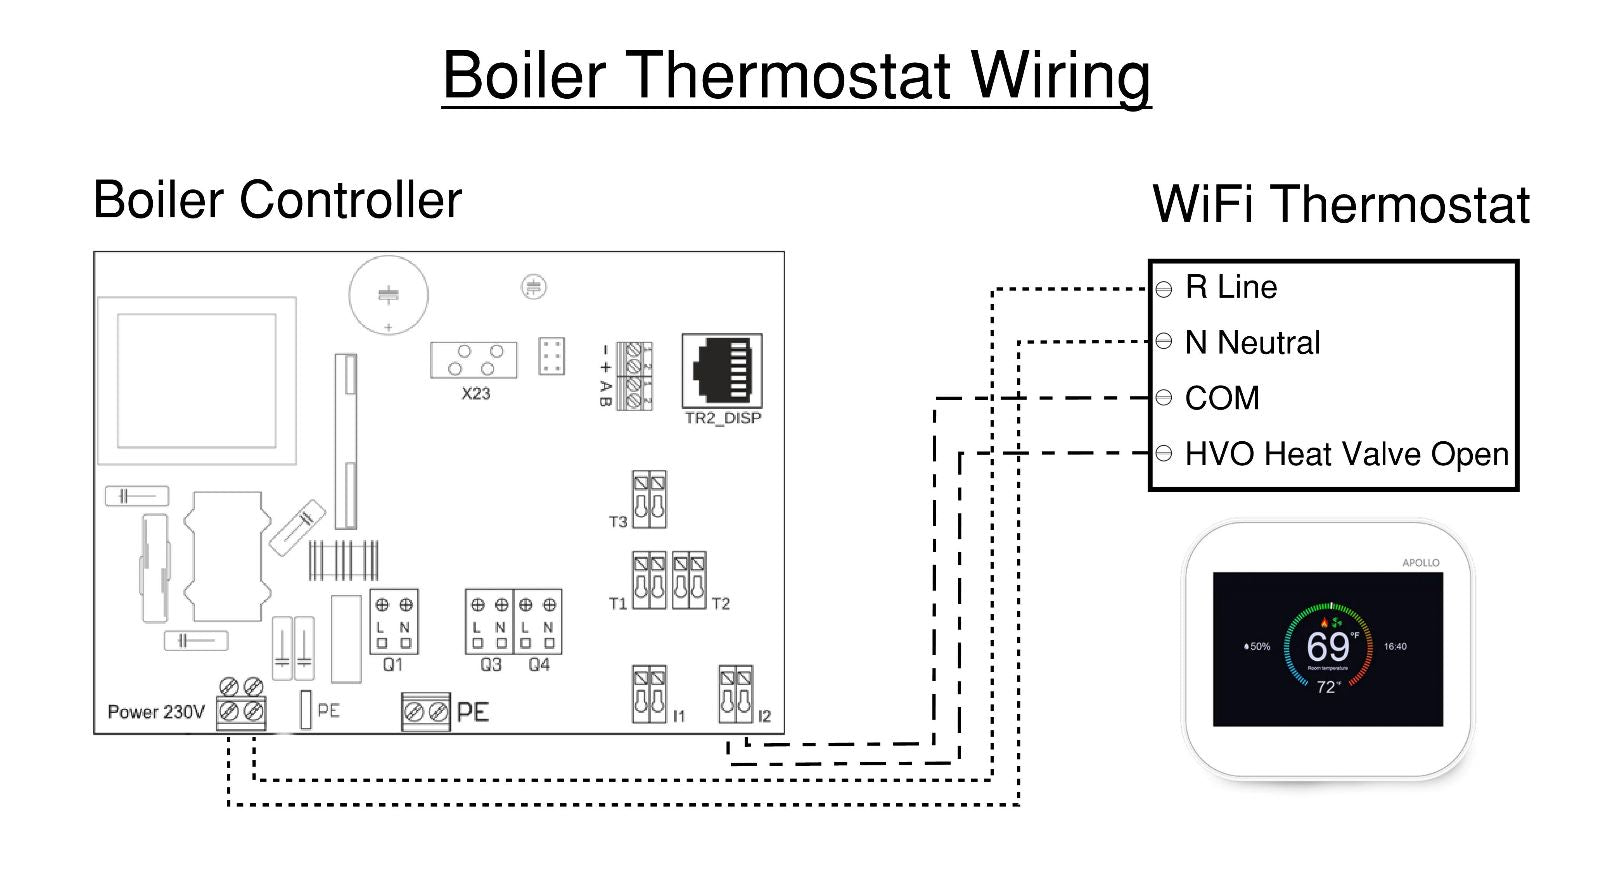 APOLLO Wi-Fi Boiler Thermostat